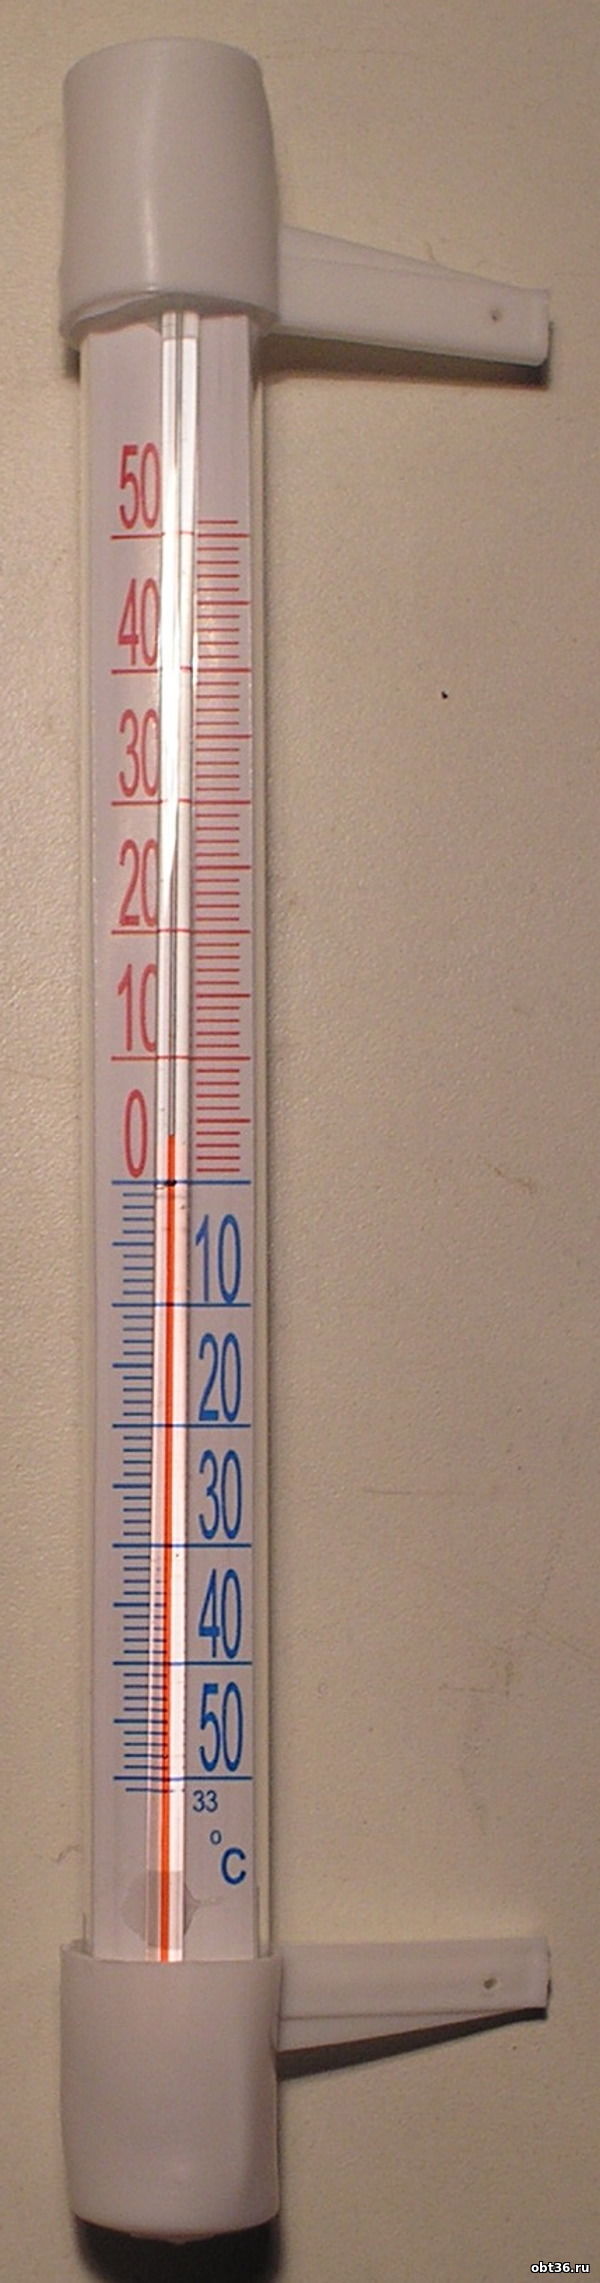 термометр уличный тсн-13.1 п.голынки руднянский район смоленская область